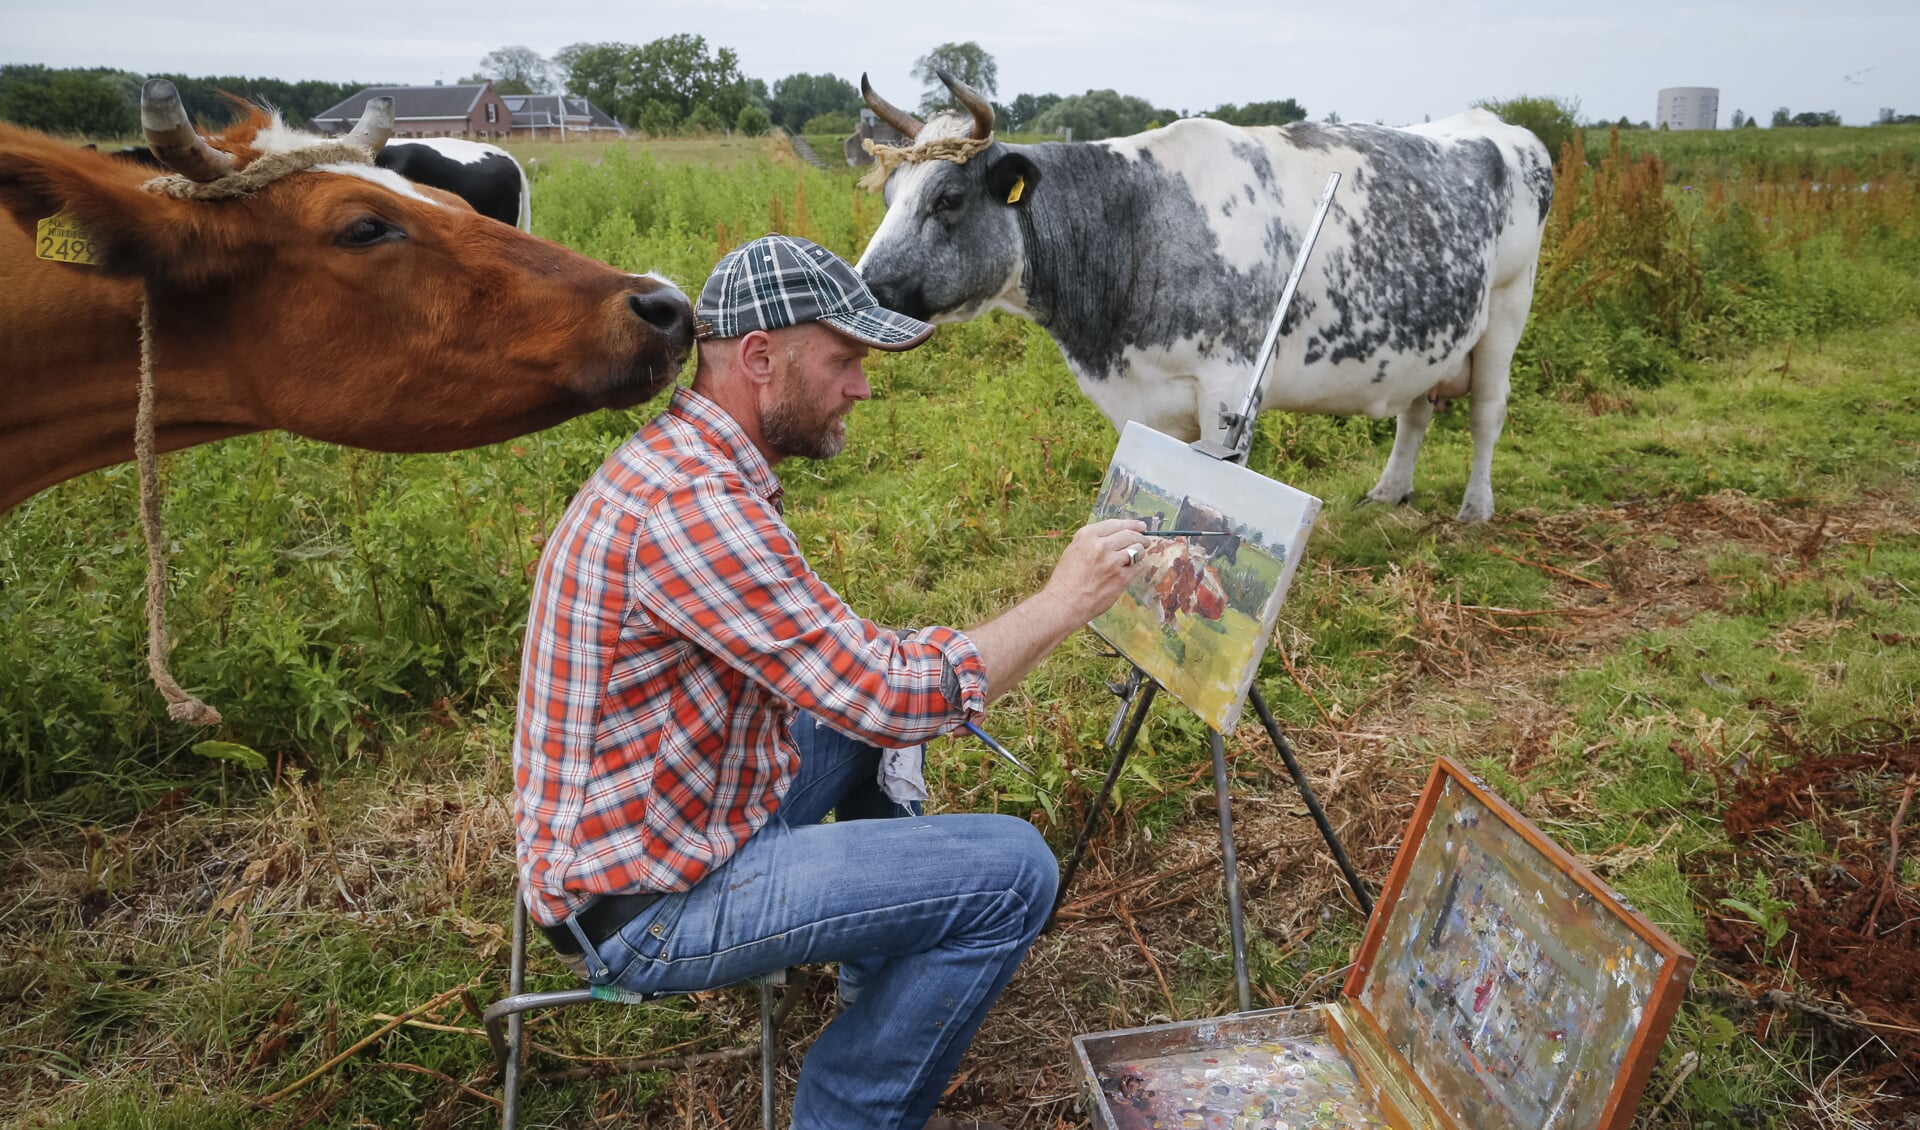 Schilder Ruud Spil staat bekend om zijn koeienportretten. 